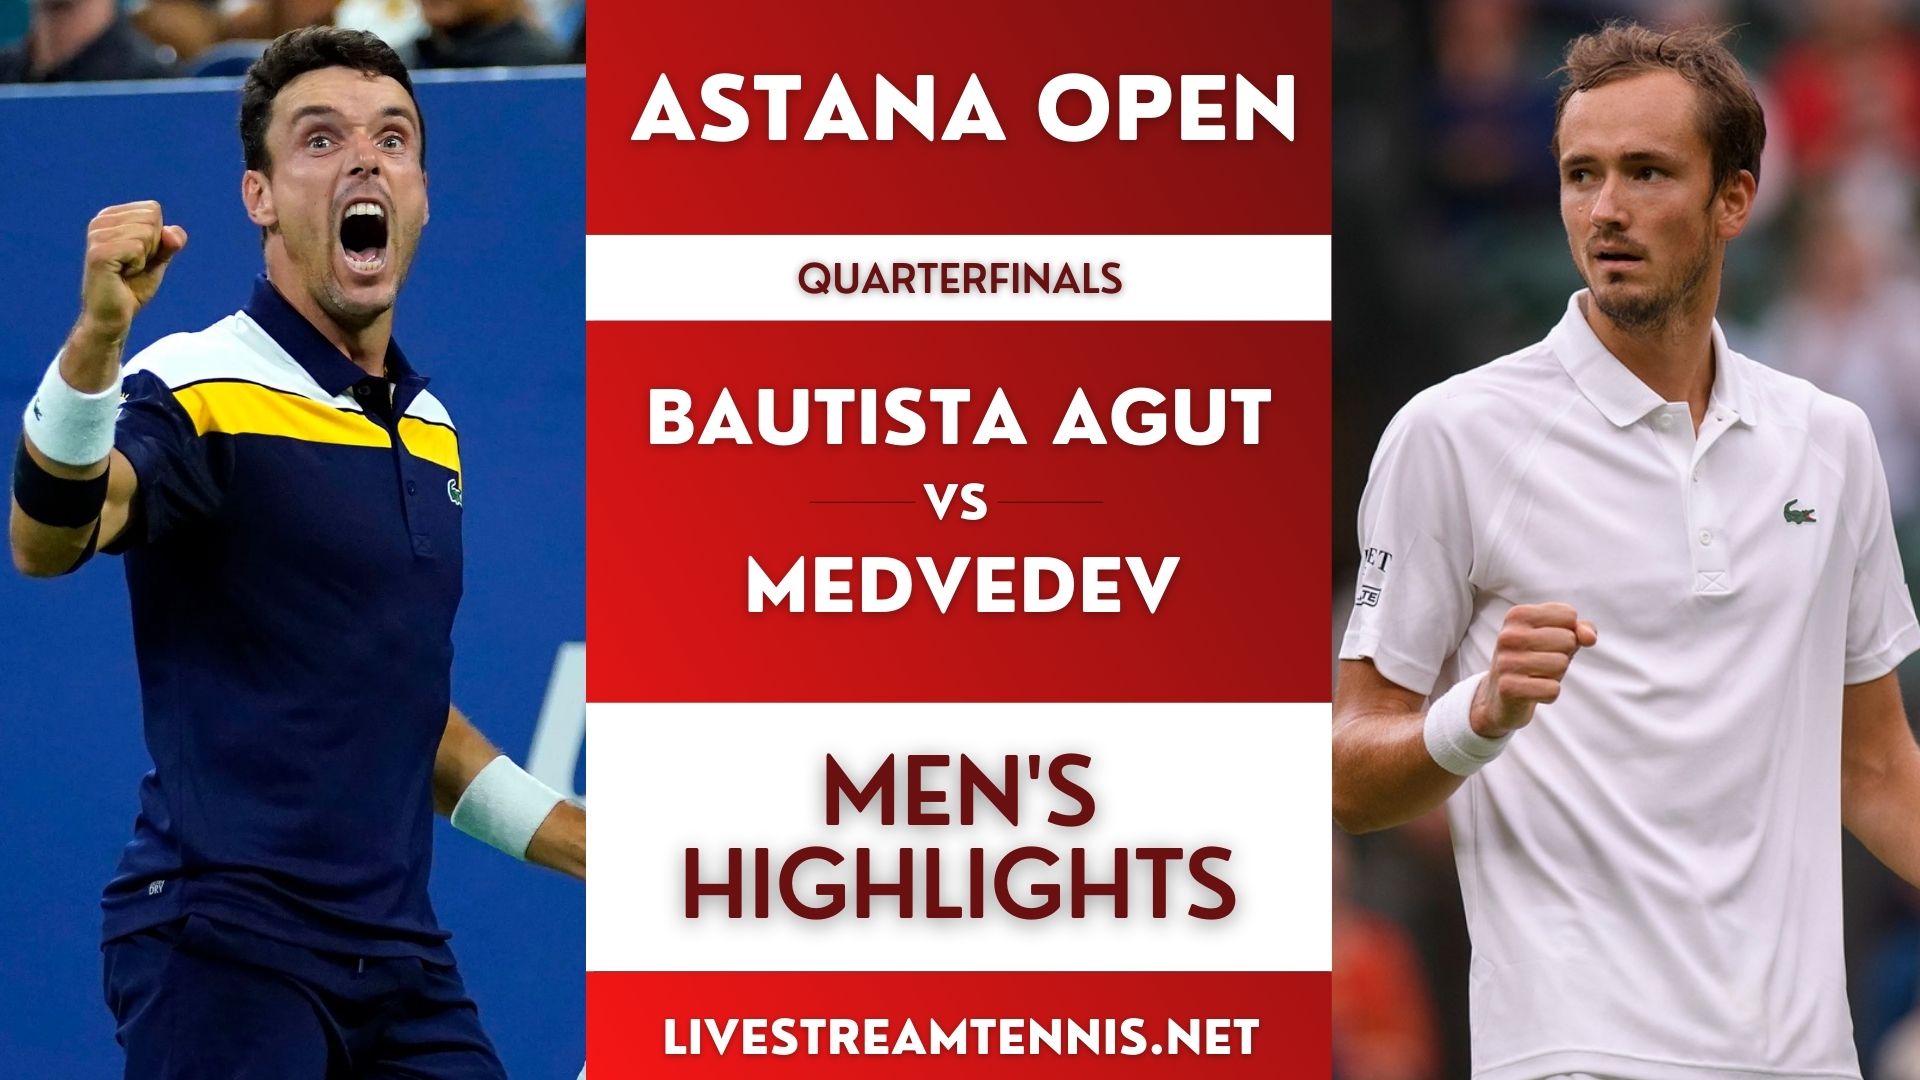 Astana Open ATP Quarterfinal 1 Highlights 2022